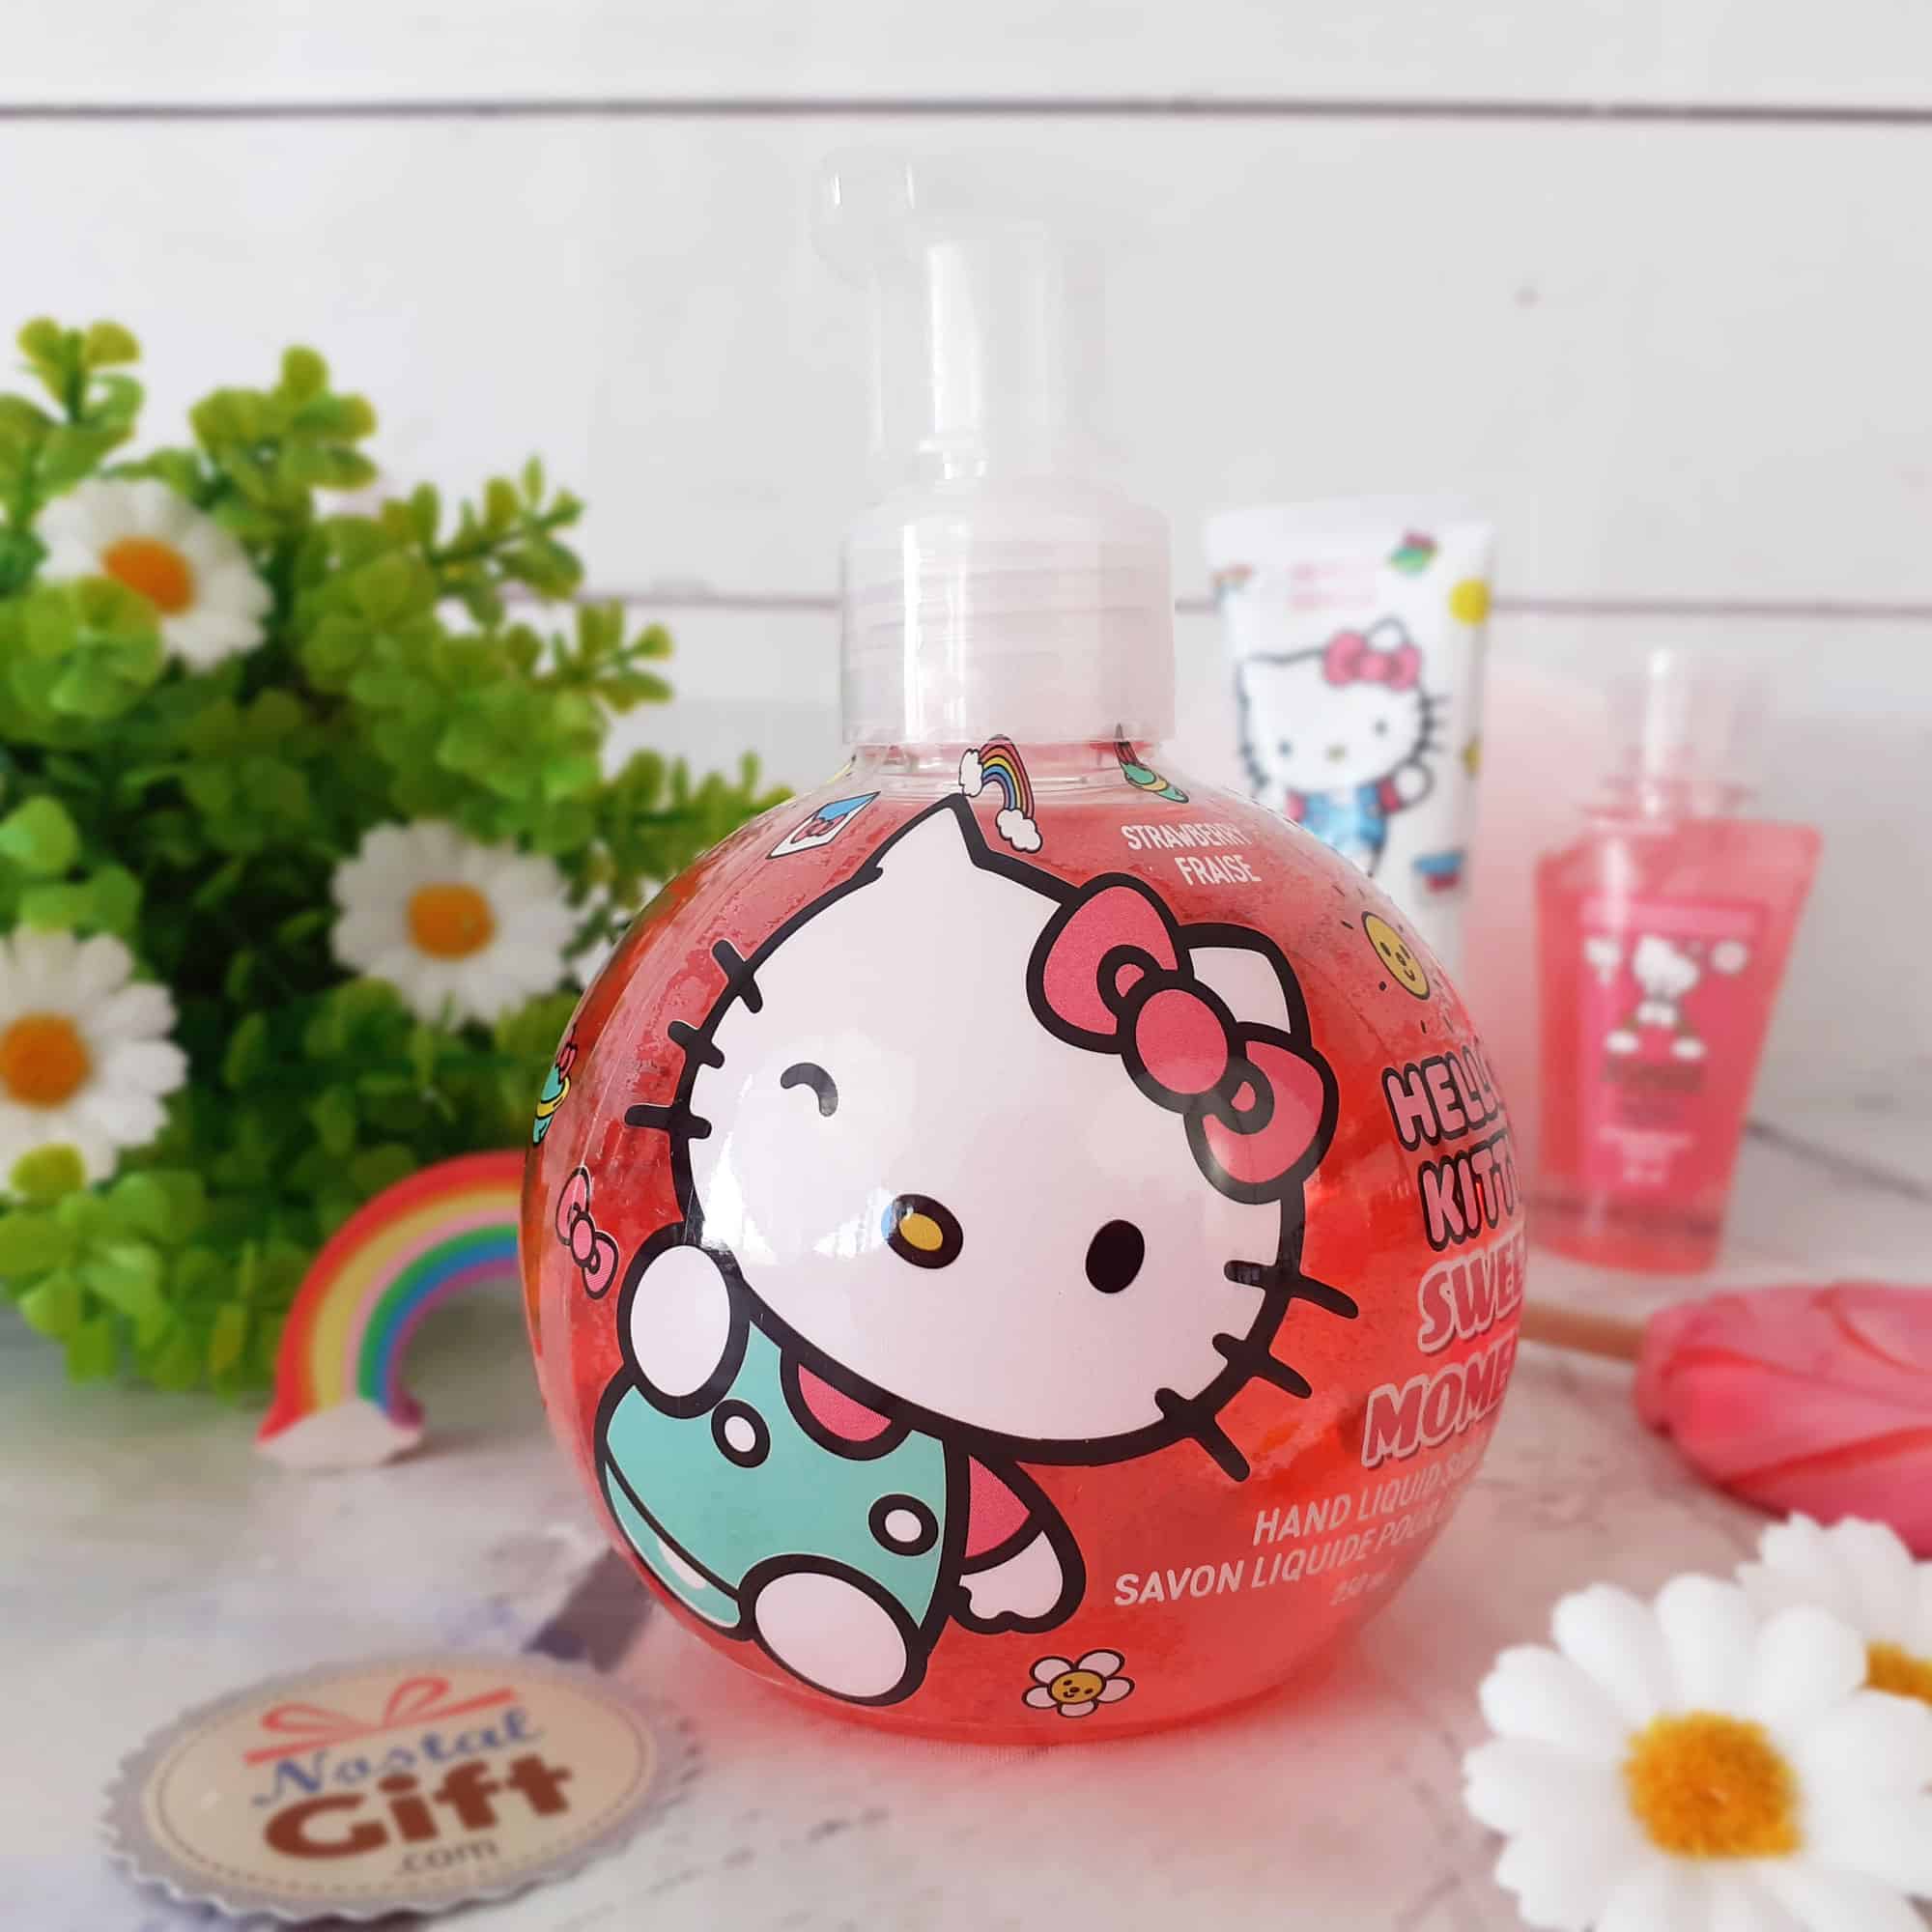 Gel désinfectant hydratant pour les mains - Hello Kitty - Parfum